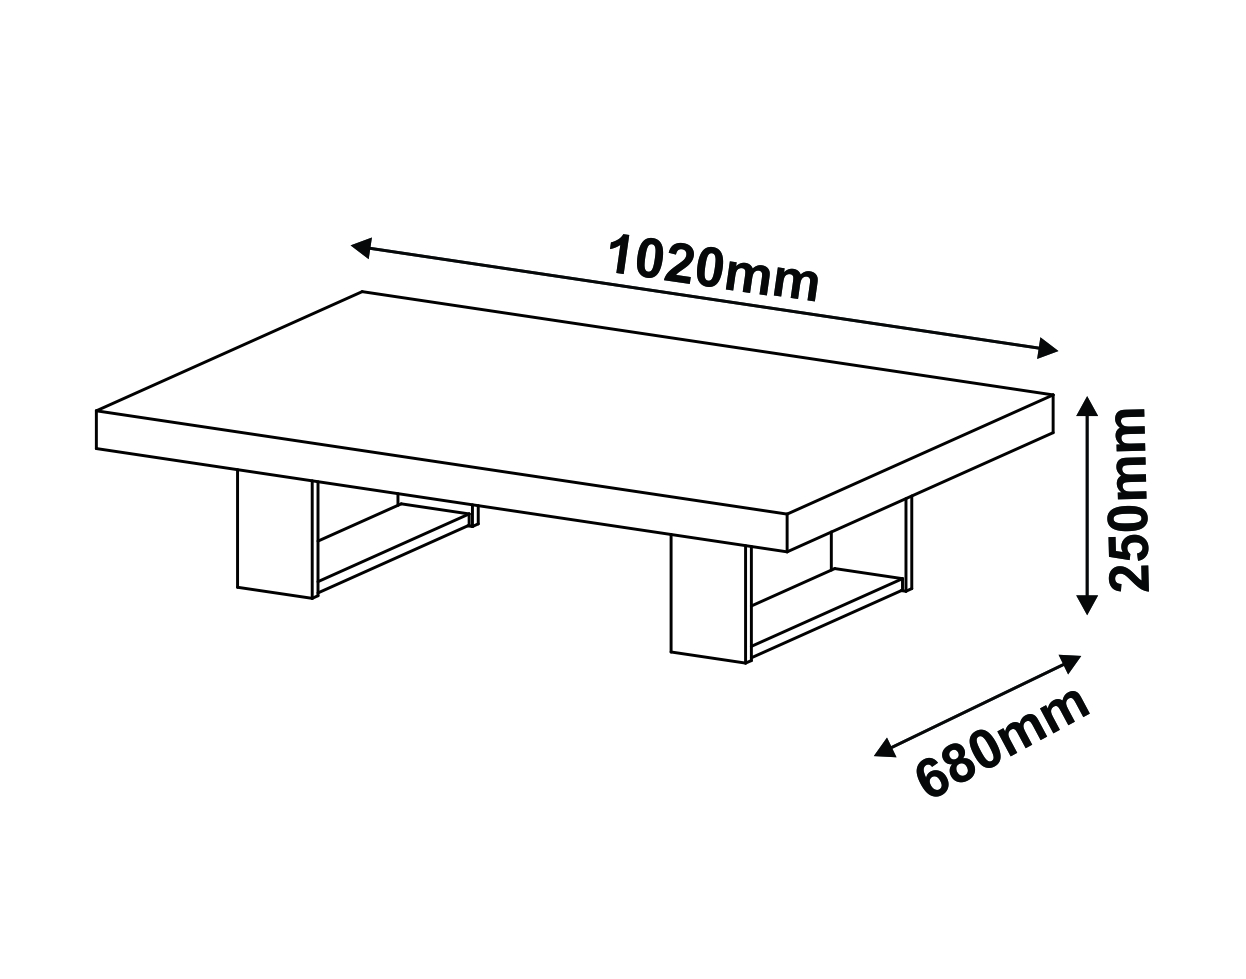 Altura ideal para mesa de centro